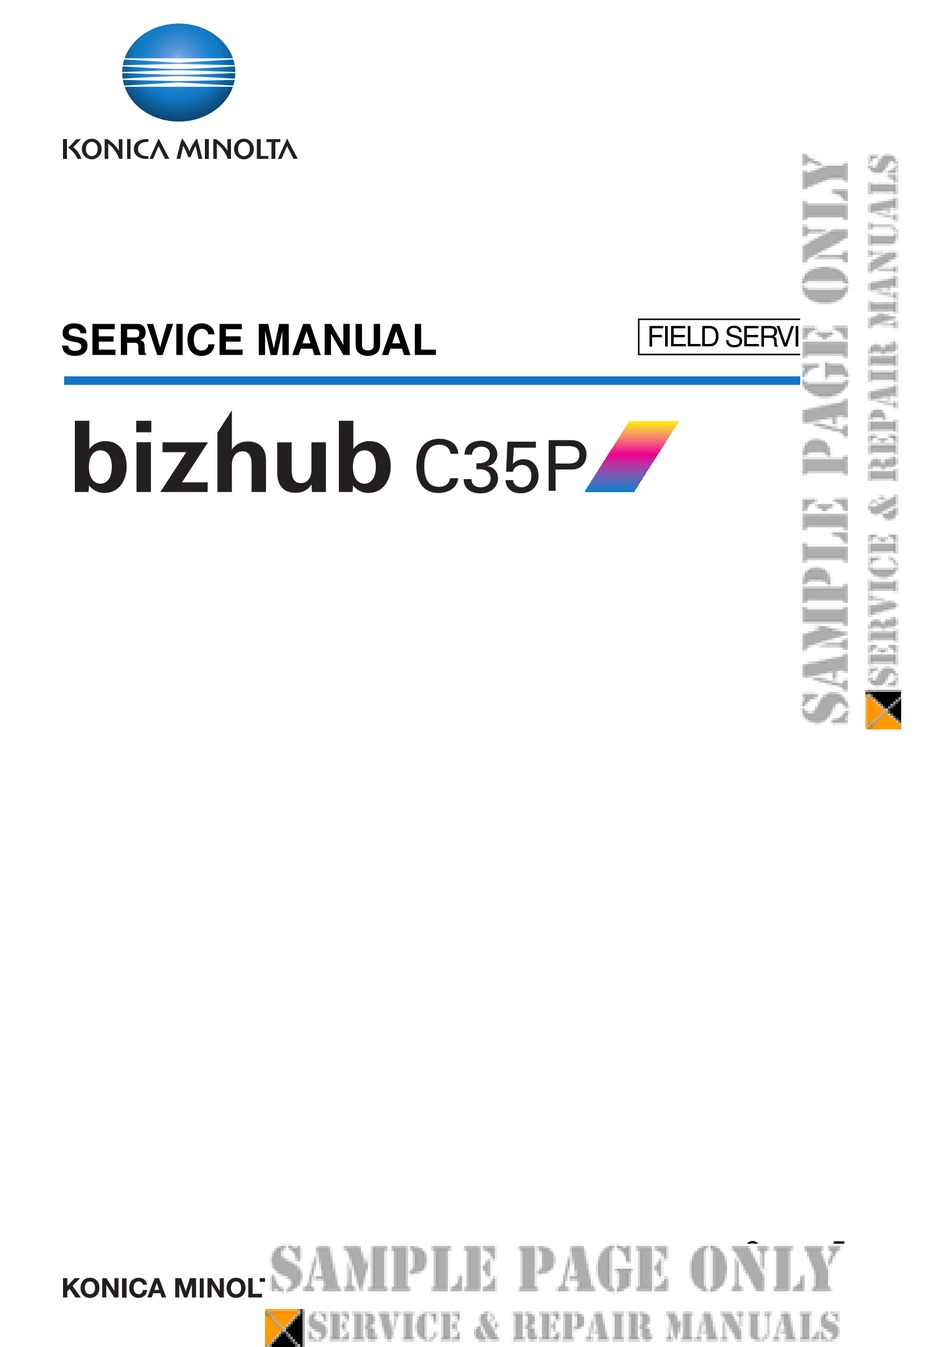 Konica Minolta Bizhub C35p Service Manual Pdf Download Manualslib